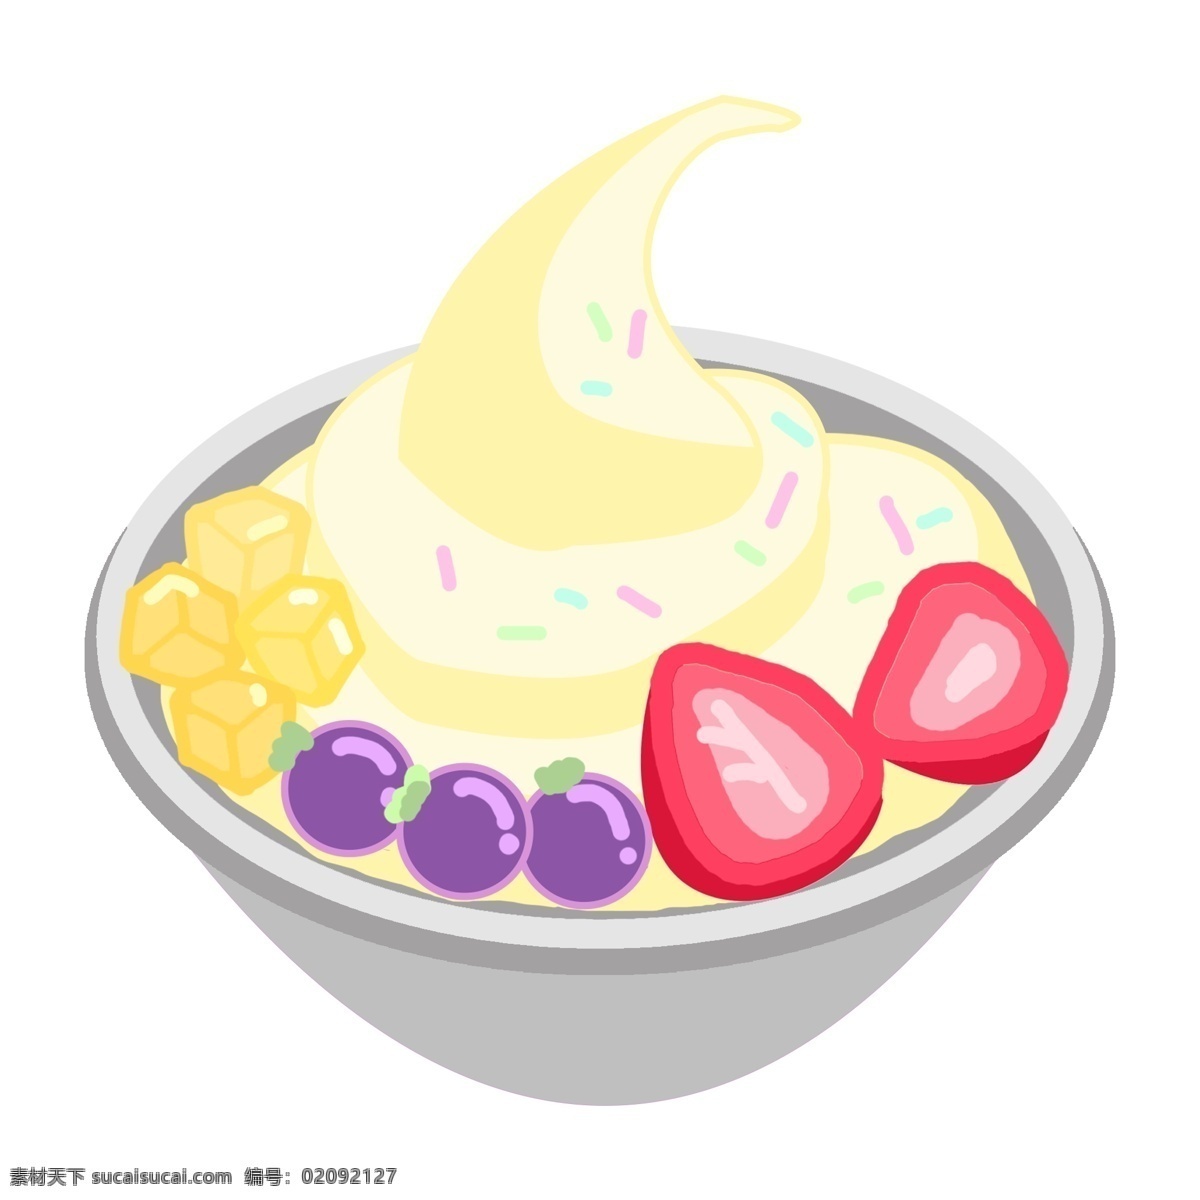 美味 小吃 冰淇淋 插画 凉爽的冰淇淋 卡通插画 小吃插画 食品插画 食物插画 地方小吃 甜品冰淇淋